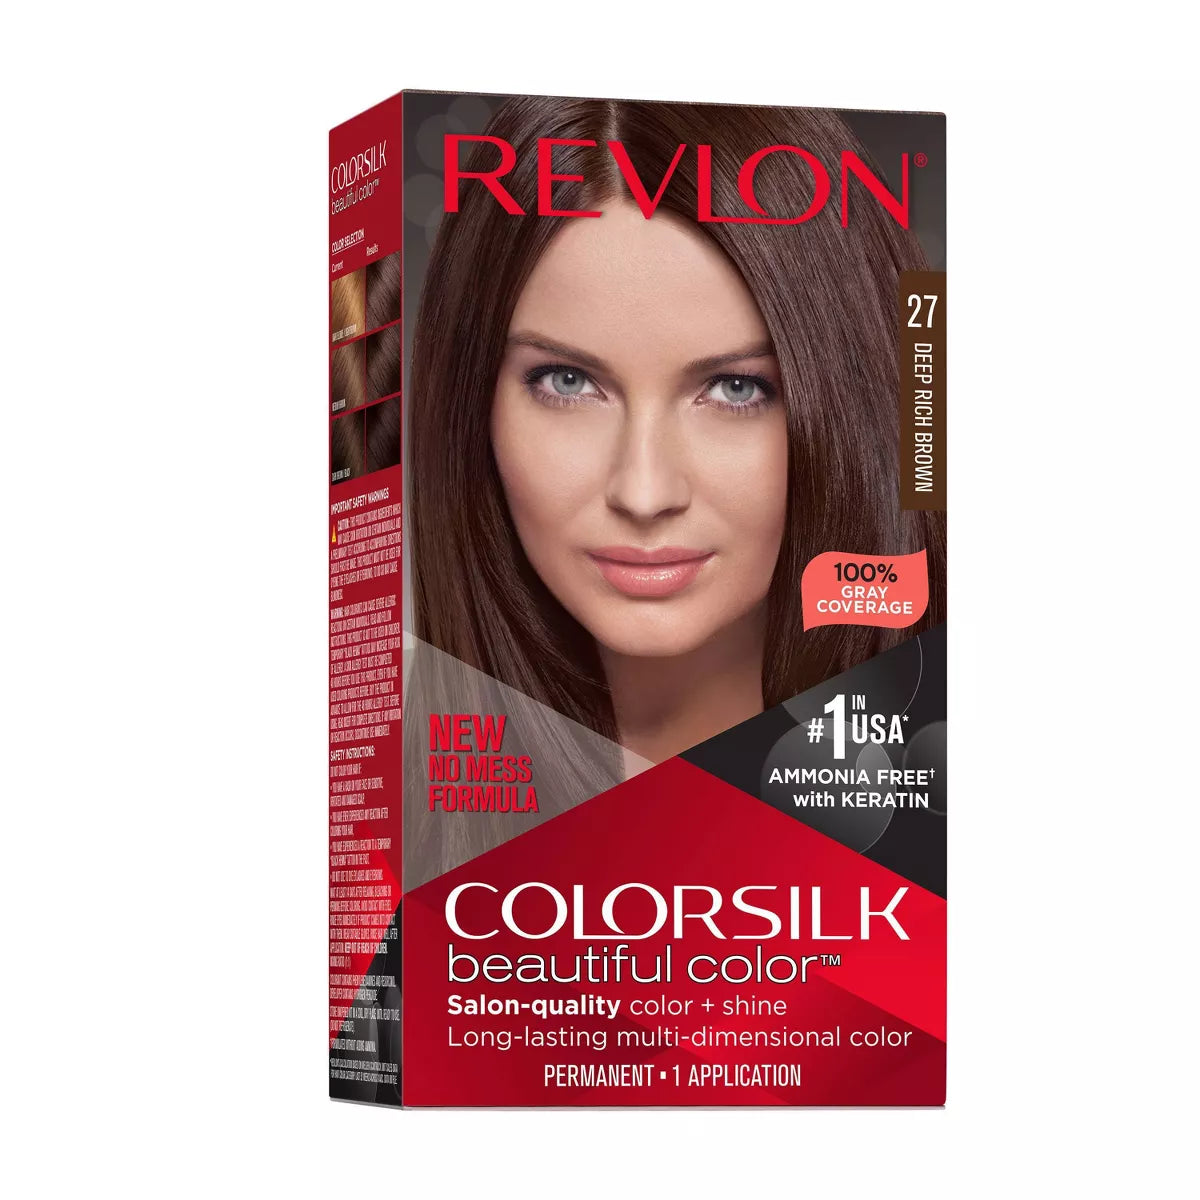 Revlon Colorsilk USA 27 Deep Rich Brown USA - 1ct/3pk